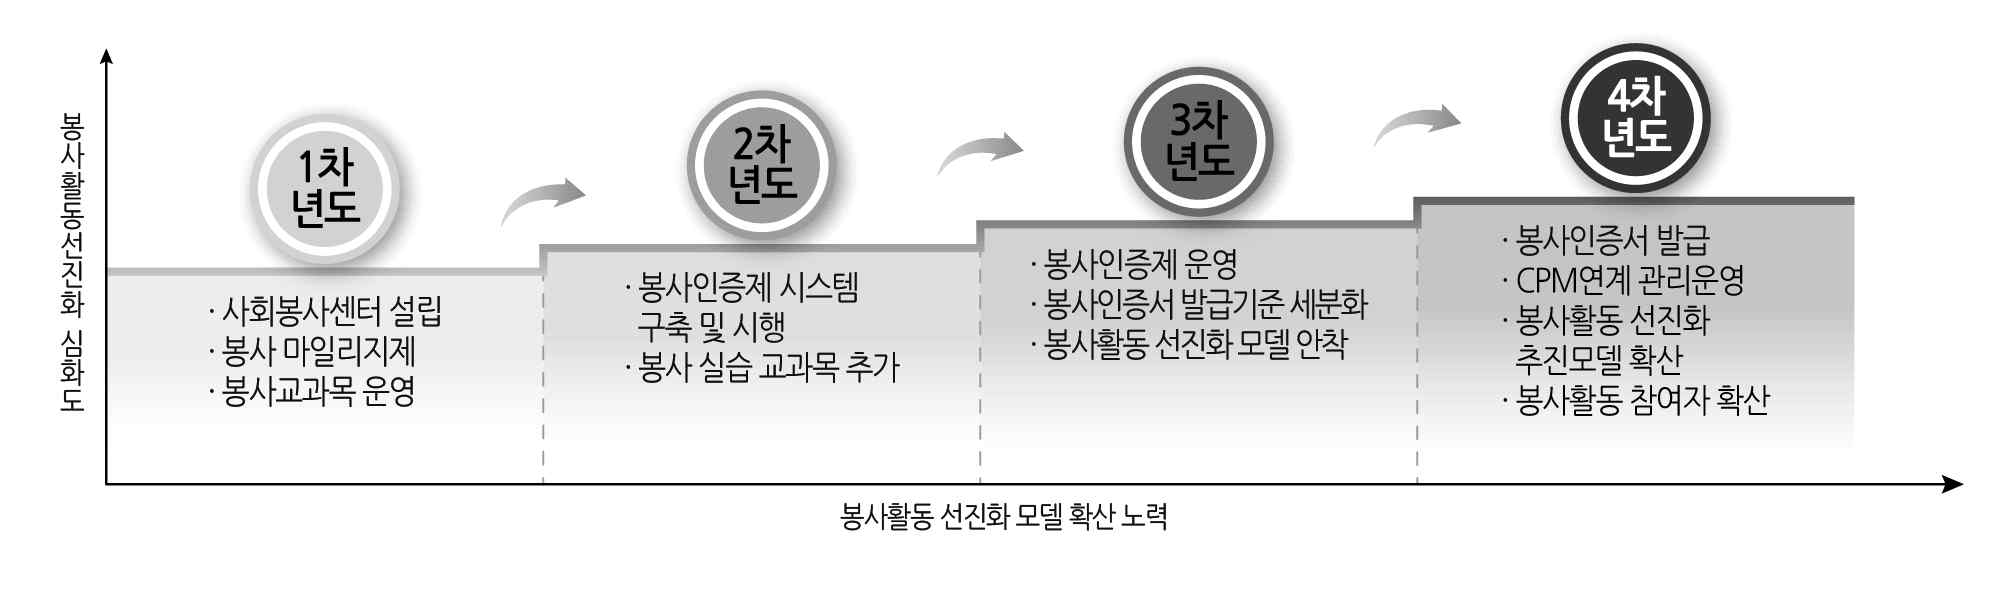 【그림 20】 봉사활동 선진화 모델 확산 노력